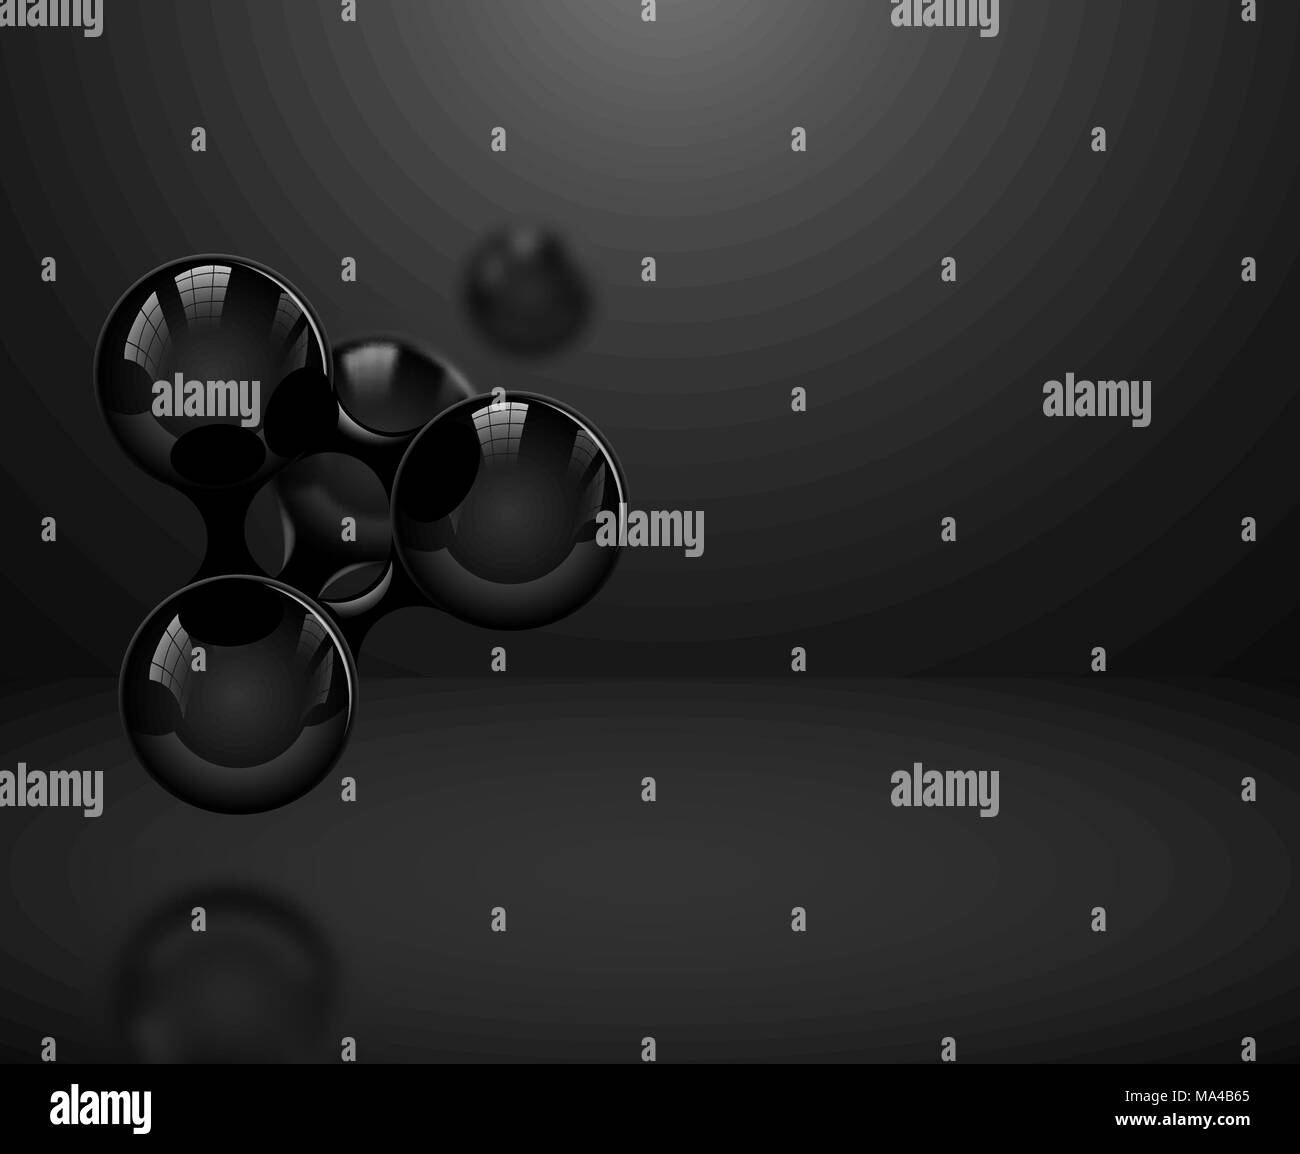 Abstrakte schwarz-glänzenden Moleküle oder Atome auf dunklem Hintergrund. Vector Illustration für die moderne Wissenschaft Medical Design oder Logo. Molekulare Struktur Stock Vektor